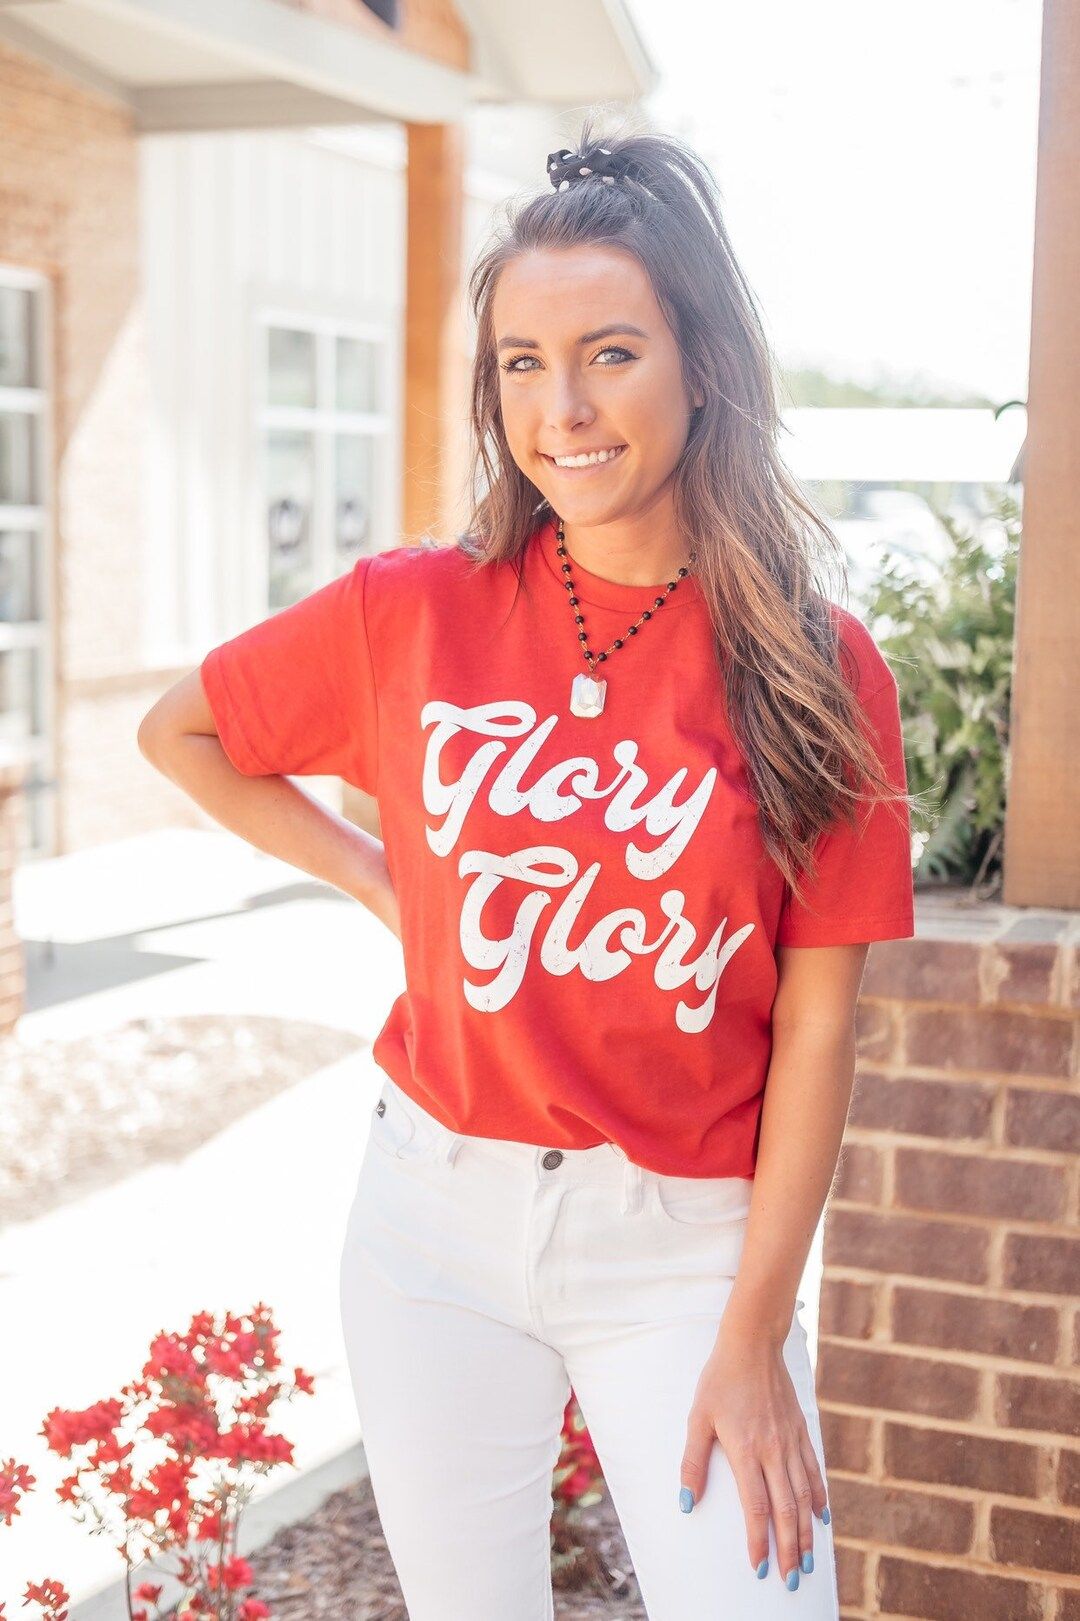 Glory Glory T Shirt | Athens, Georgia | Etsy (US)